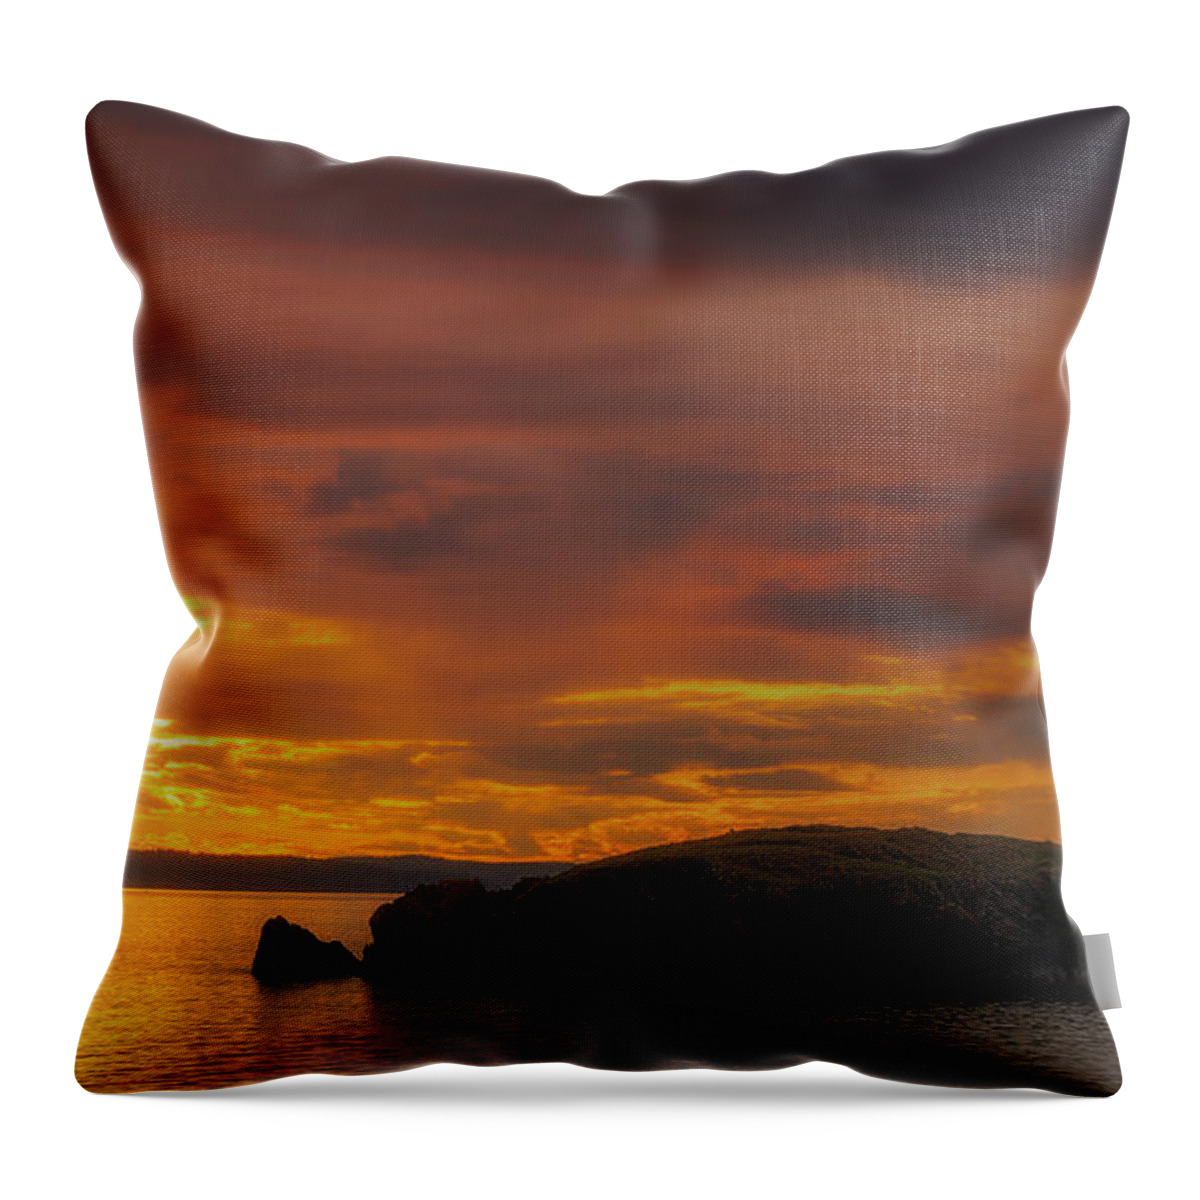 San Juan Throw Pillow featuring the photograph San Juan Islands Golden Hour by Ryan Manuel